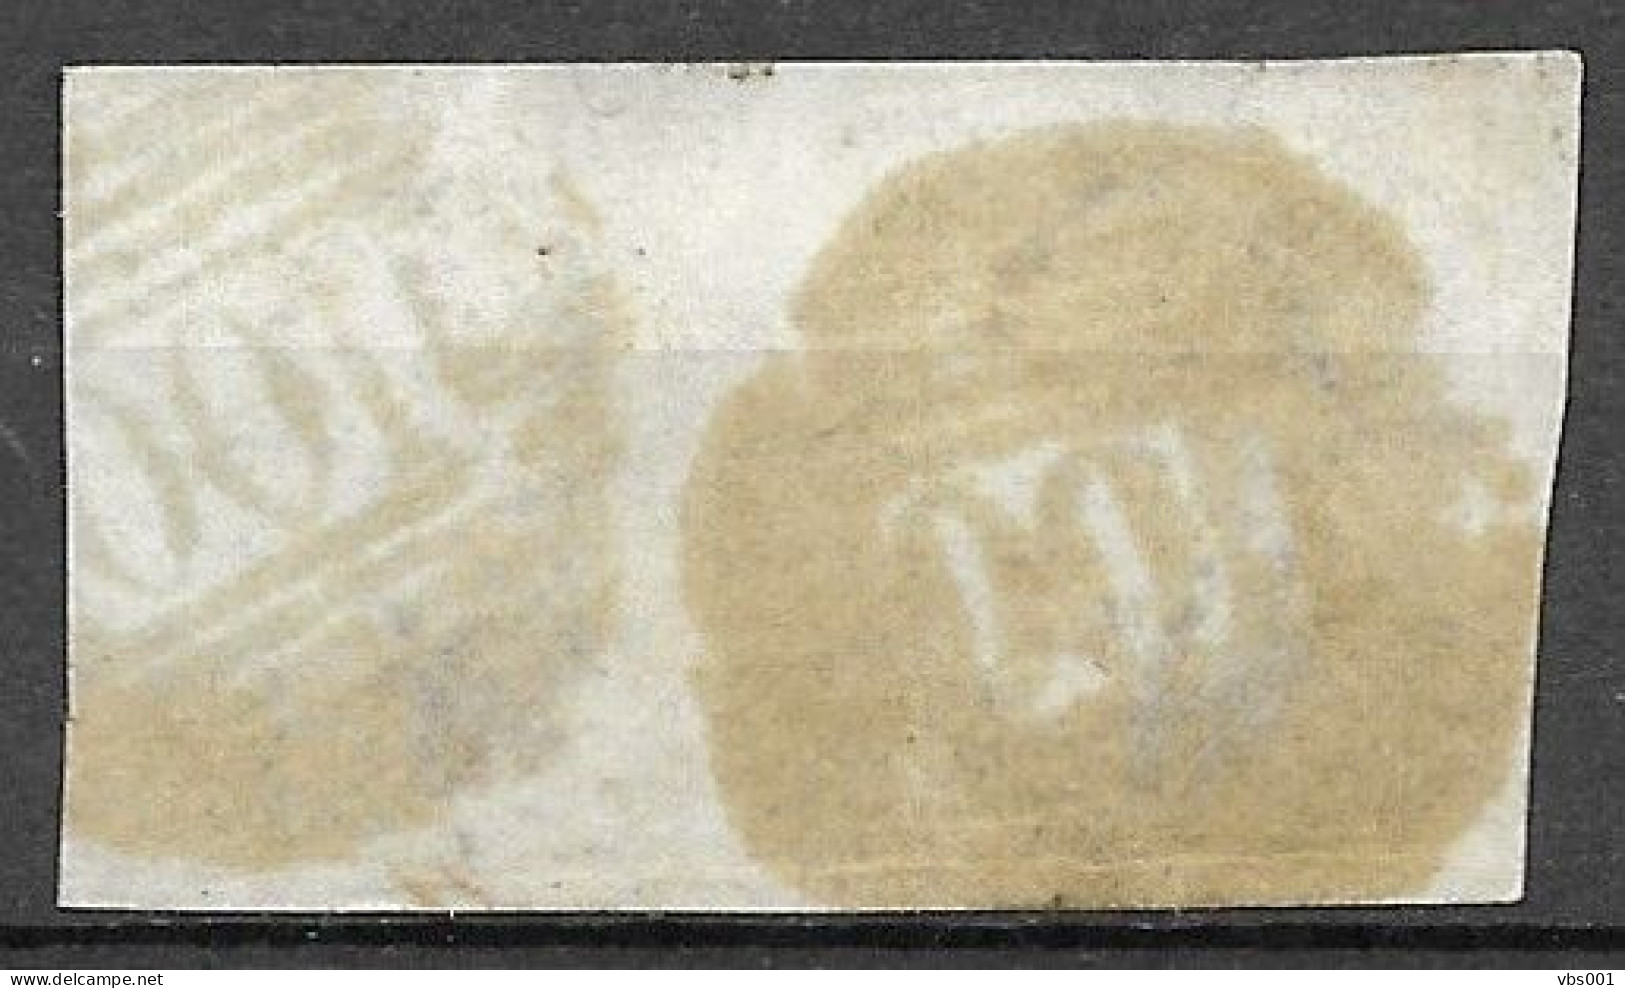 OBP10 In Paar, Met 4 Randen En Geburen, Met Balkstempel P100 Renaix (zie Scans) - 1858-1862 Medaillen (9/12)